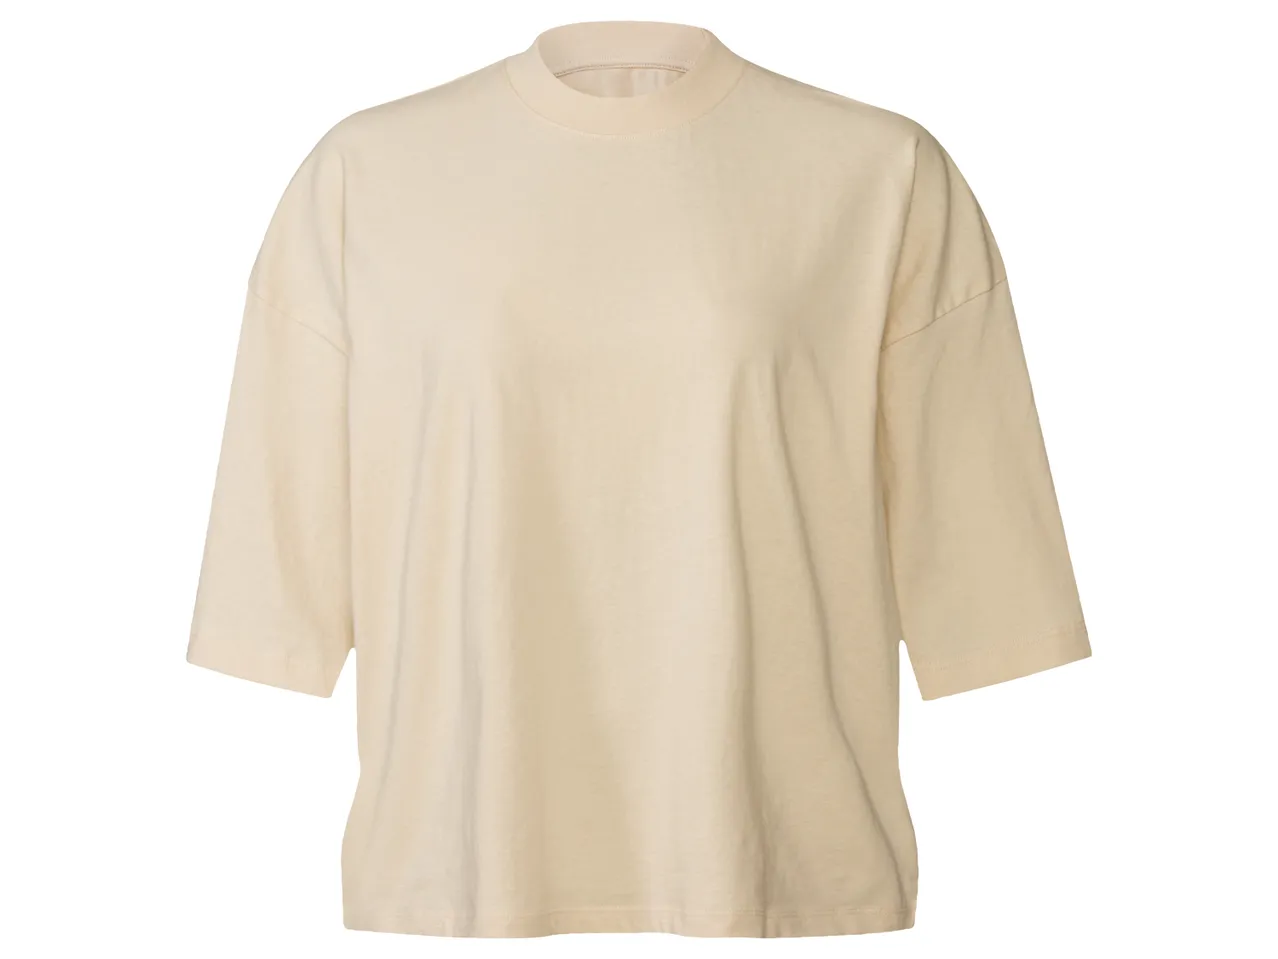 T-Shirt oversize da donna , prezzo 4.99 EUR 
T-Shirt oversize da donna Misure: ...